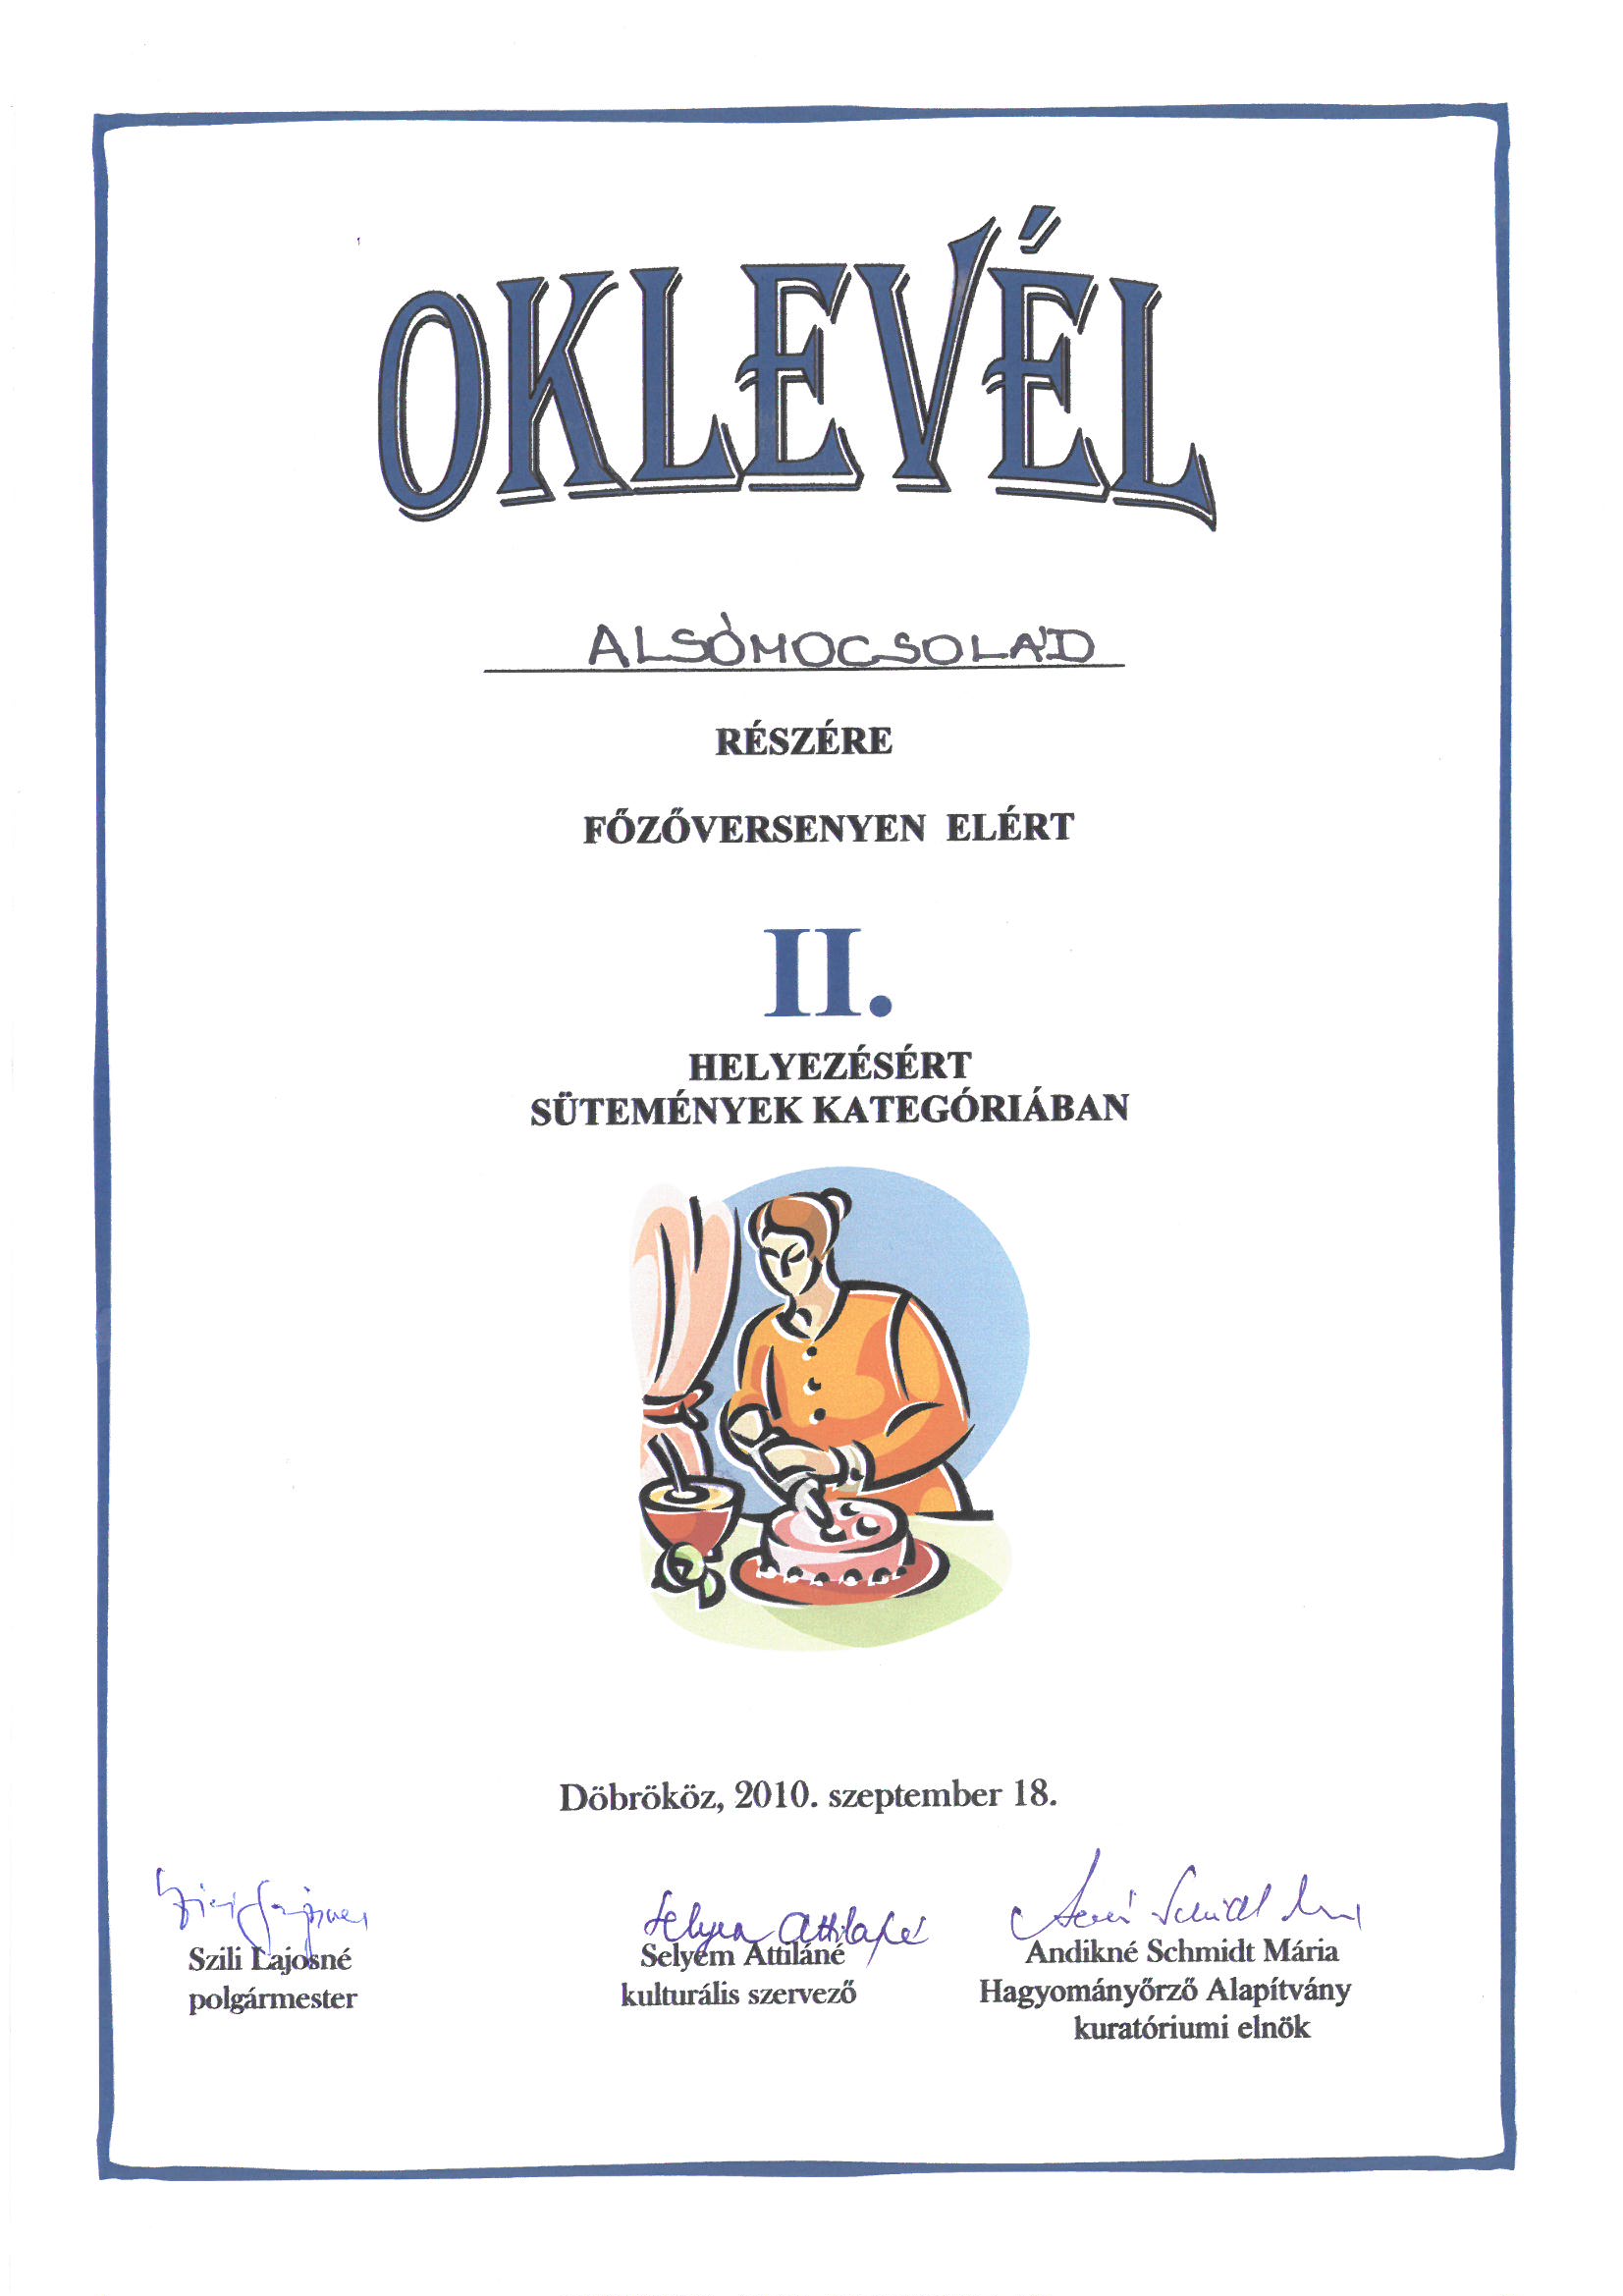 Oklevél II. helyezésért sütemények kategóriában ...Alsómocsolád részére a főzőversenyen elért II. helyezésért... : Döbrököz, 2010.